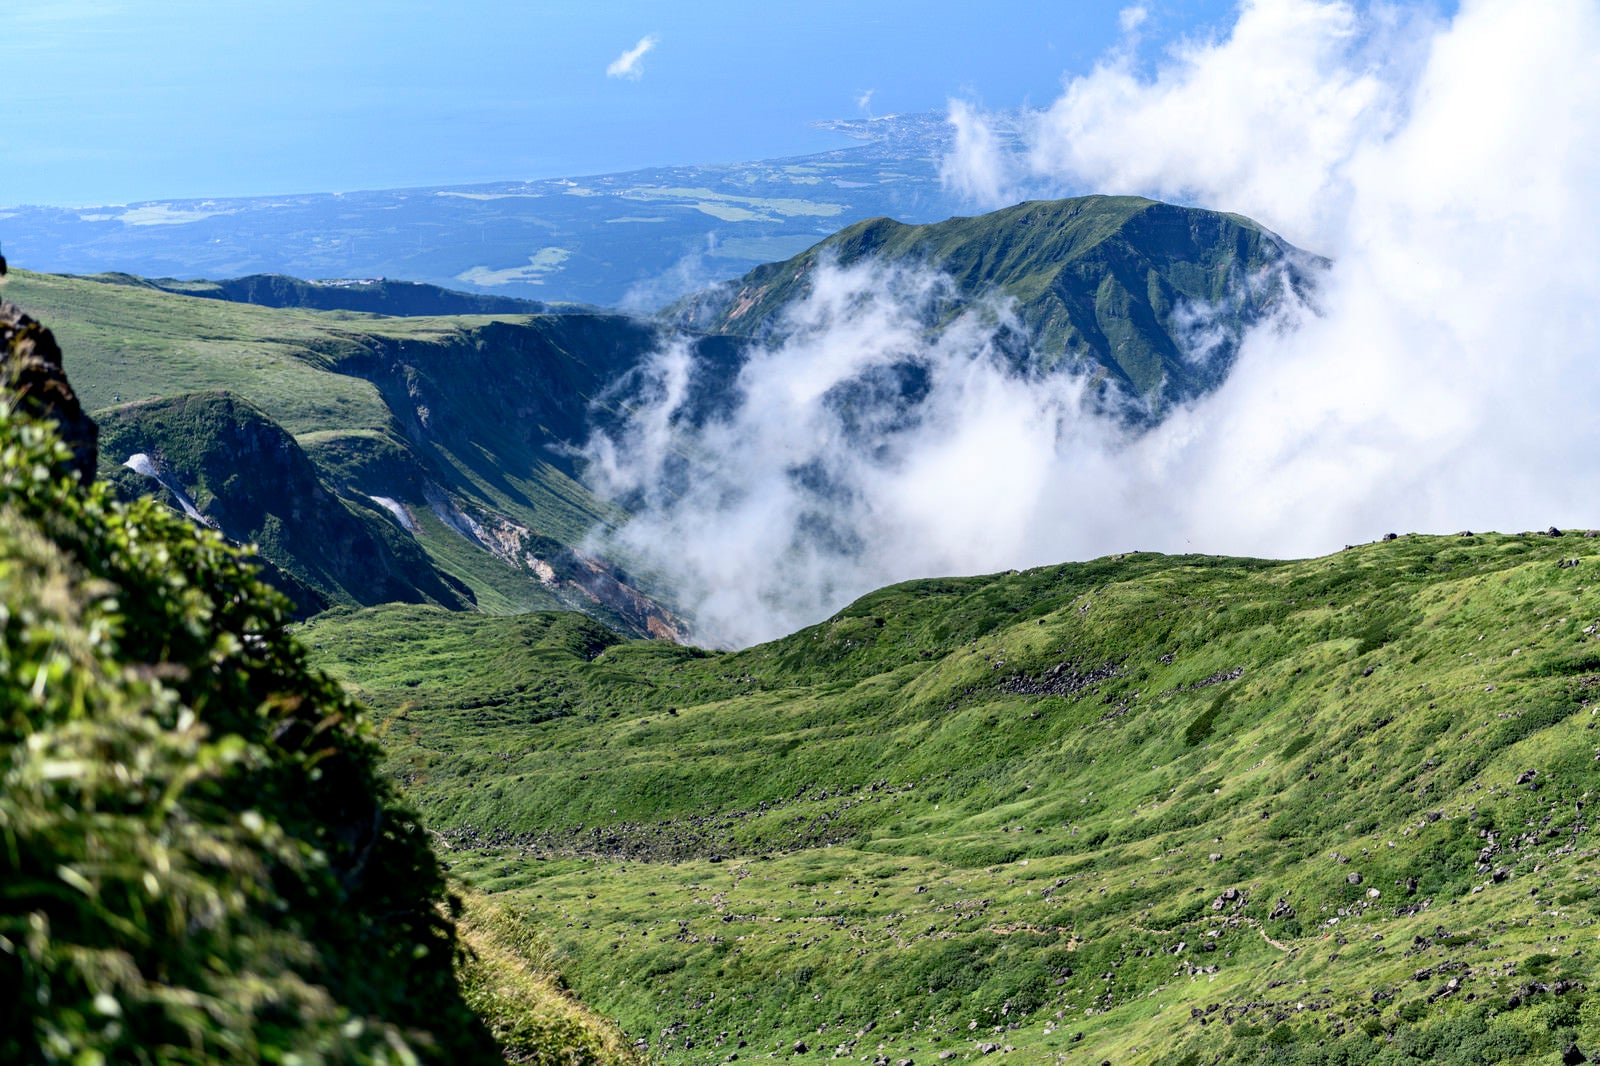 「雲が湧き上がる鳥海山山頂の景観」の写真